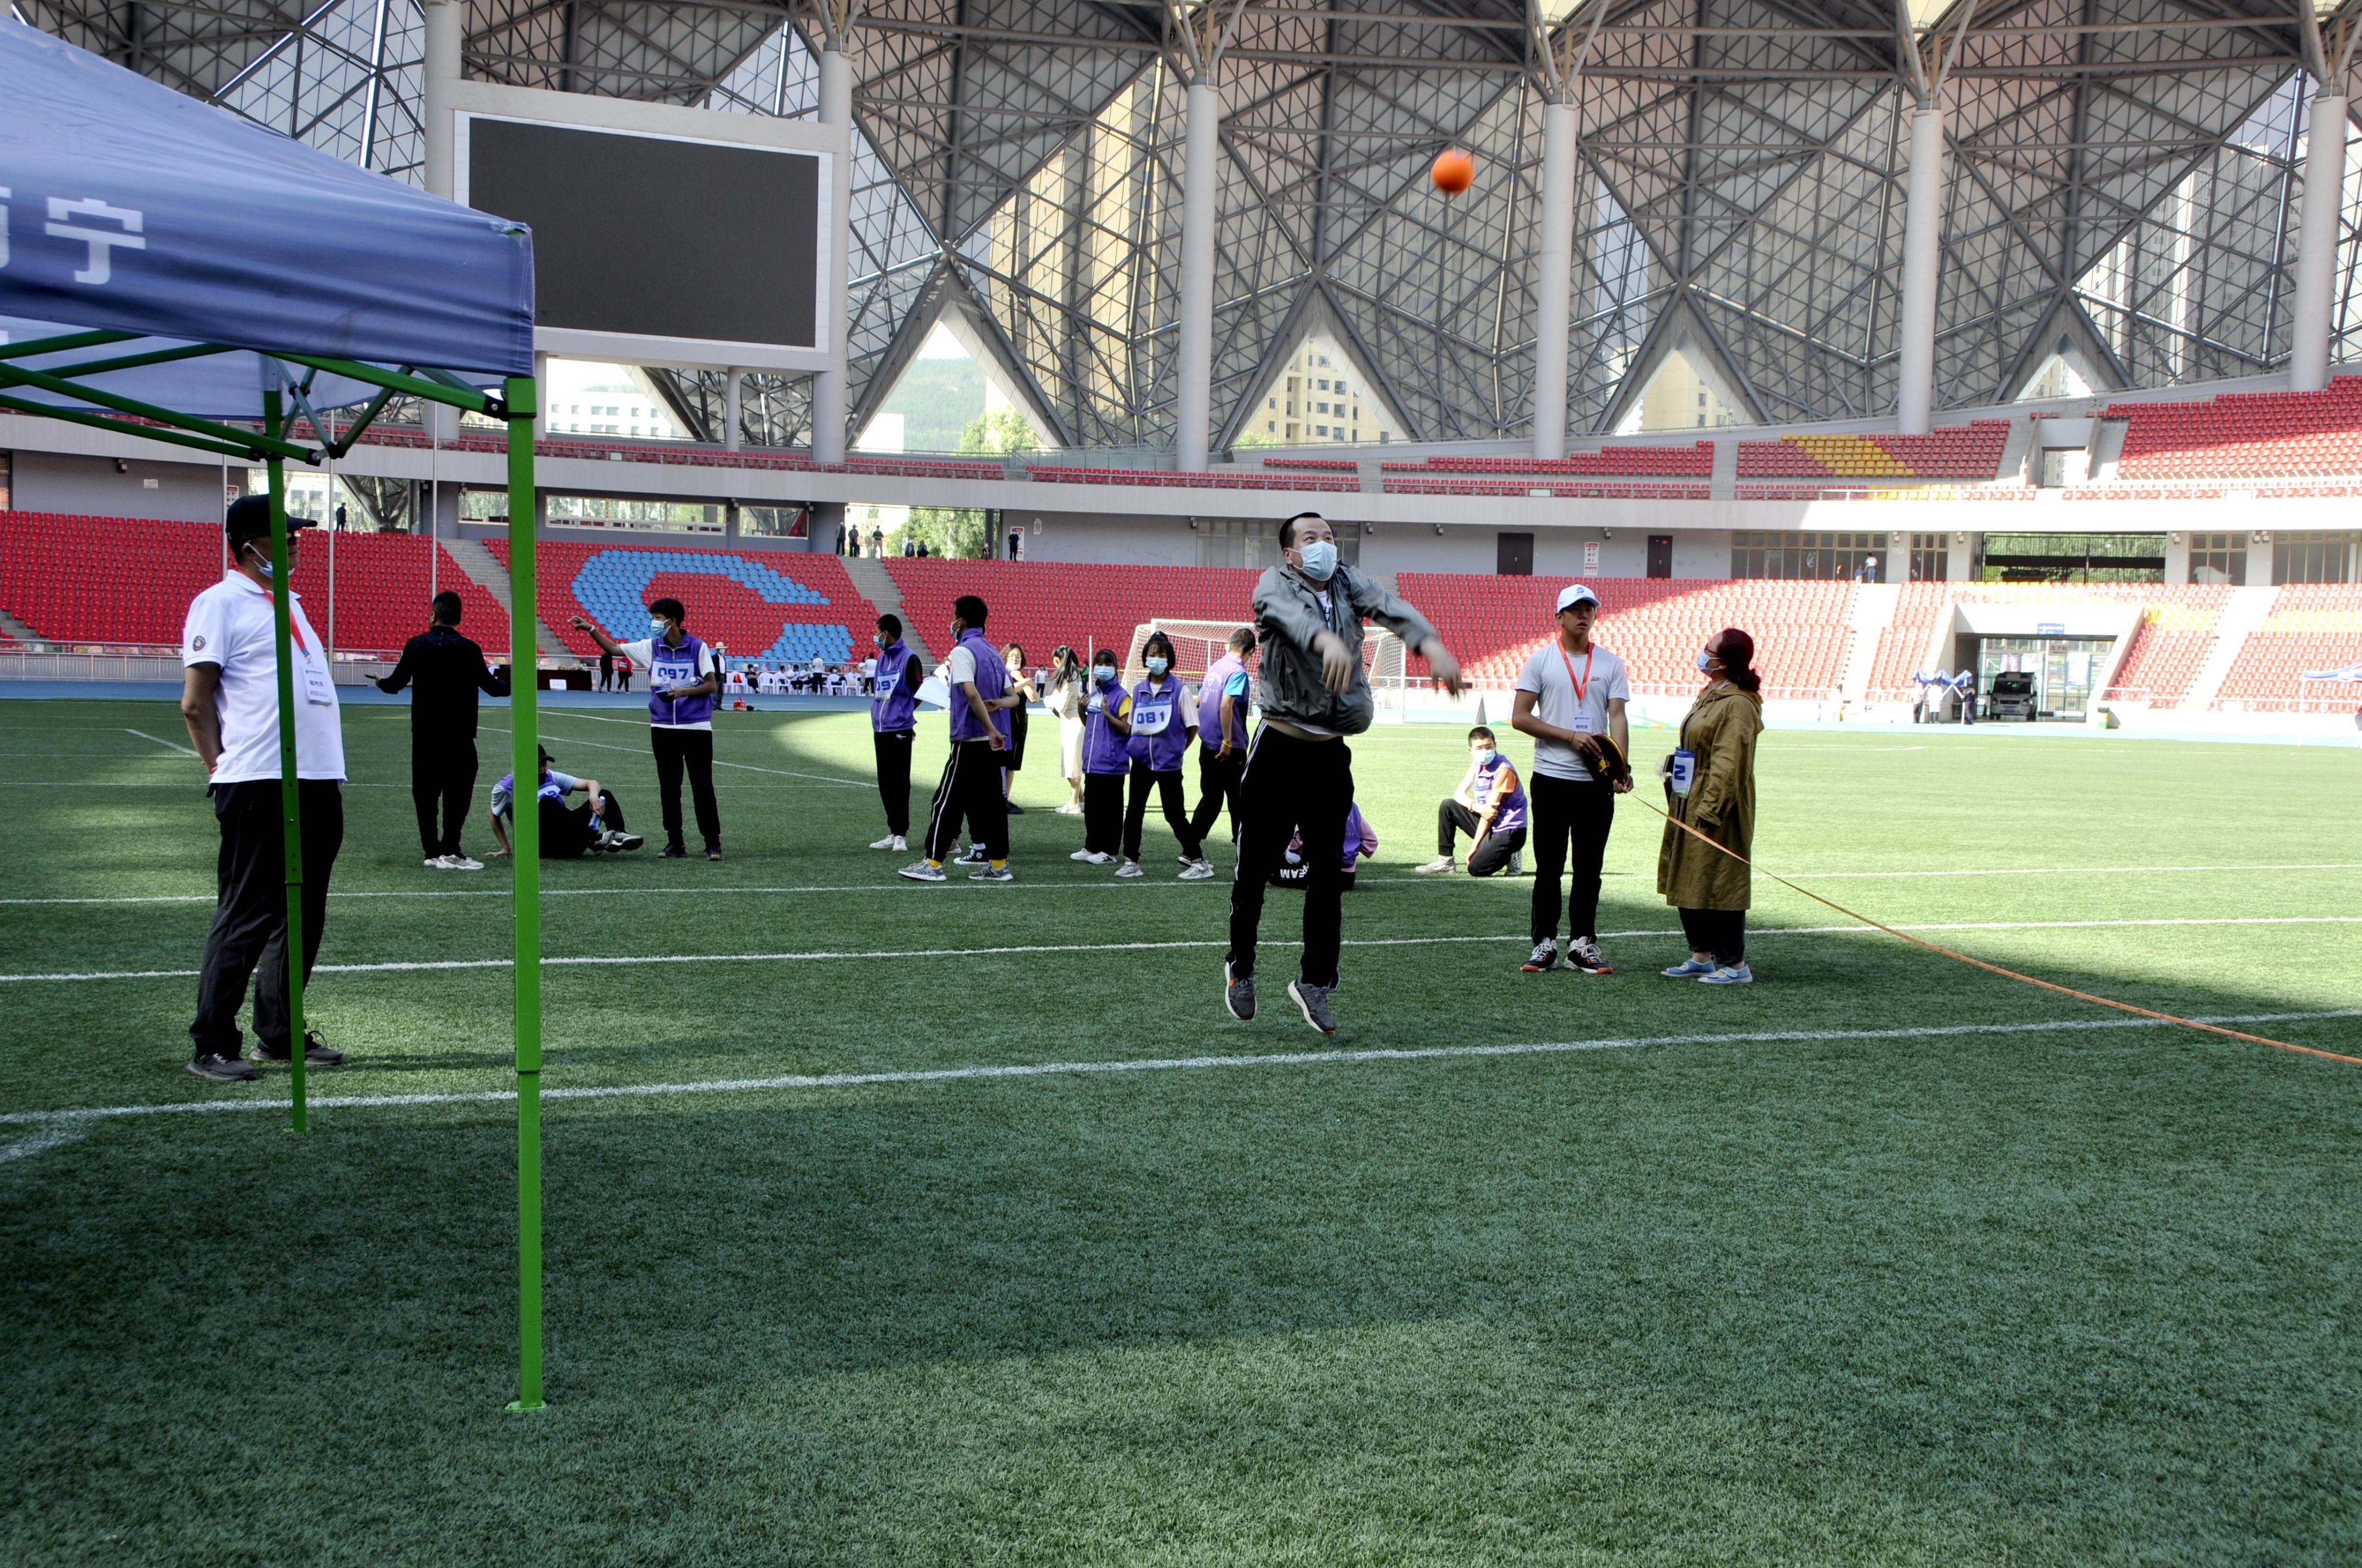 2022年西宁市残疾人运动会在青海体育中心举行